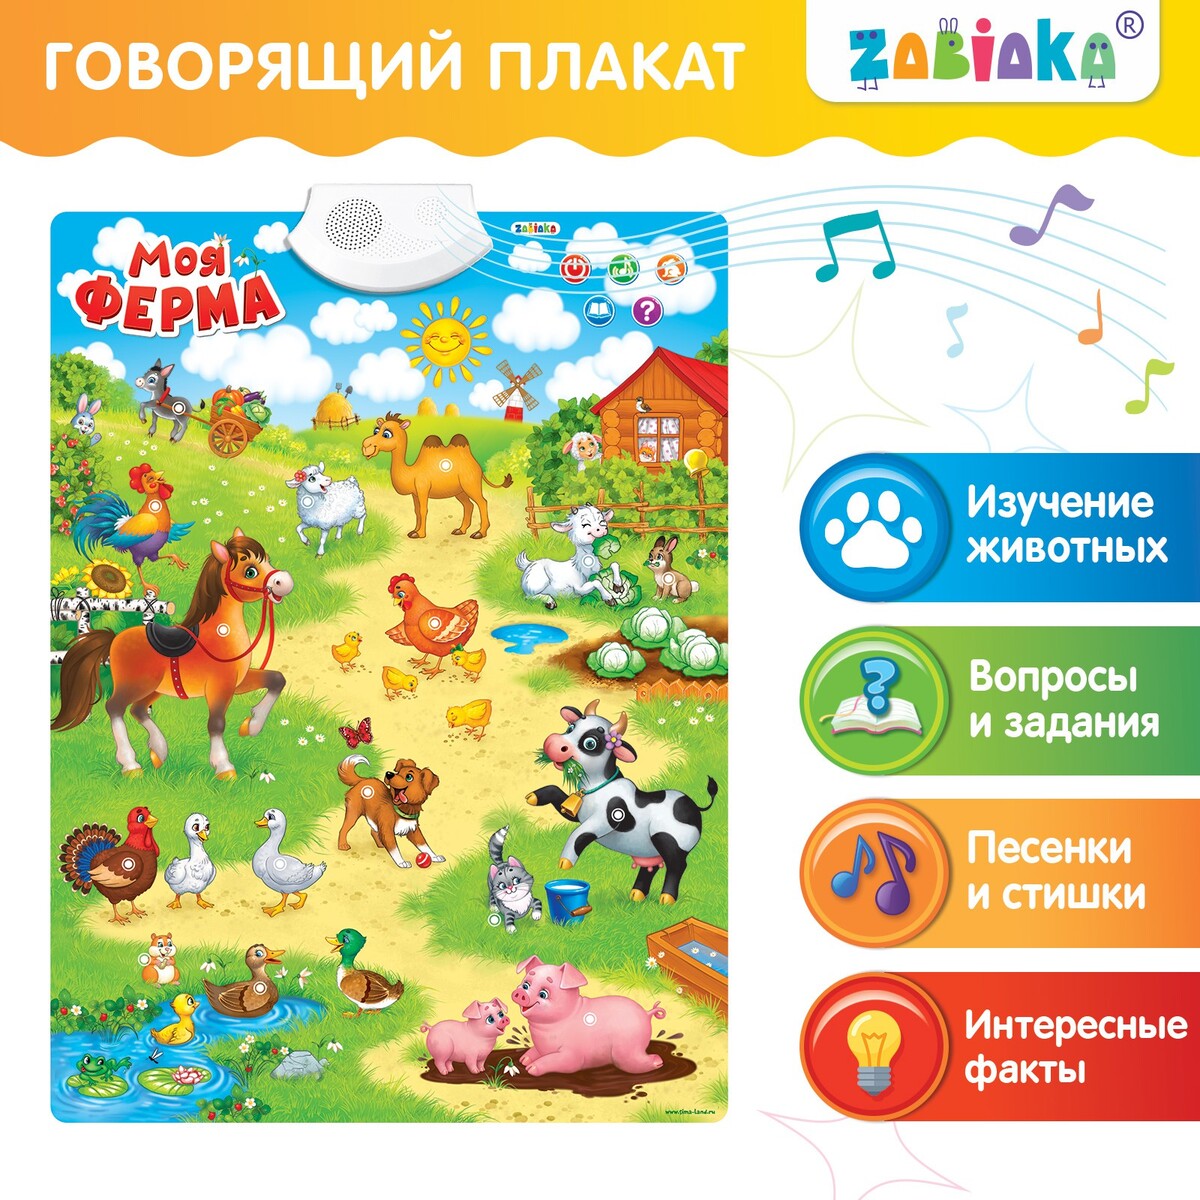 Говорящий электронный плакат владислав ходасевич чающий и говорящий